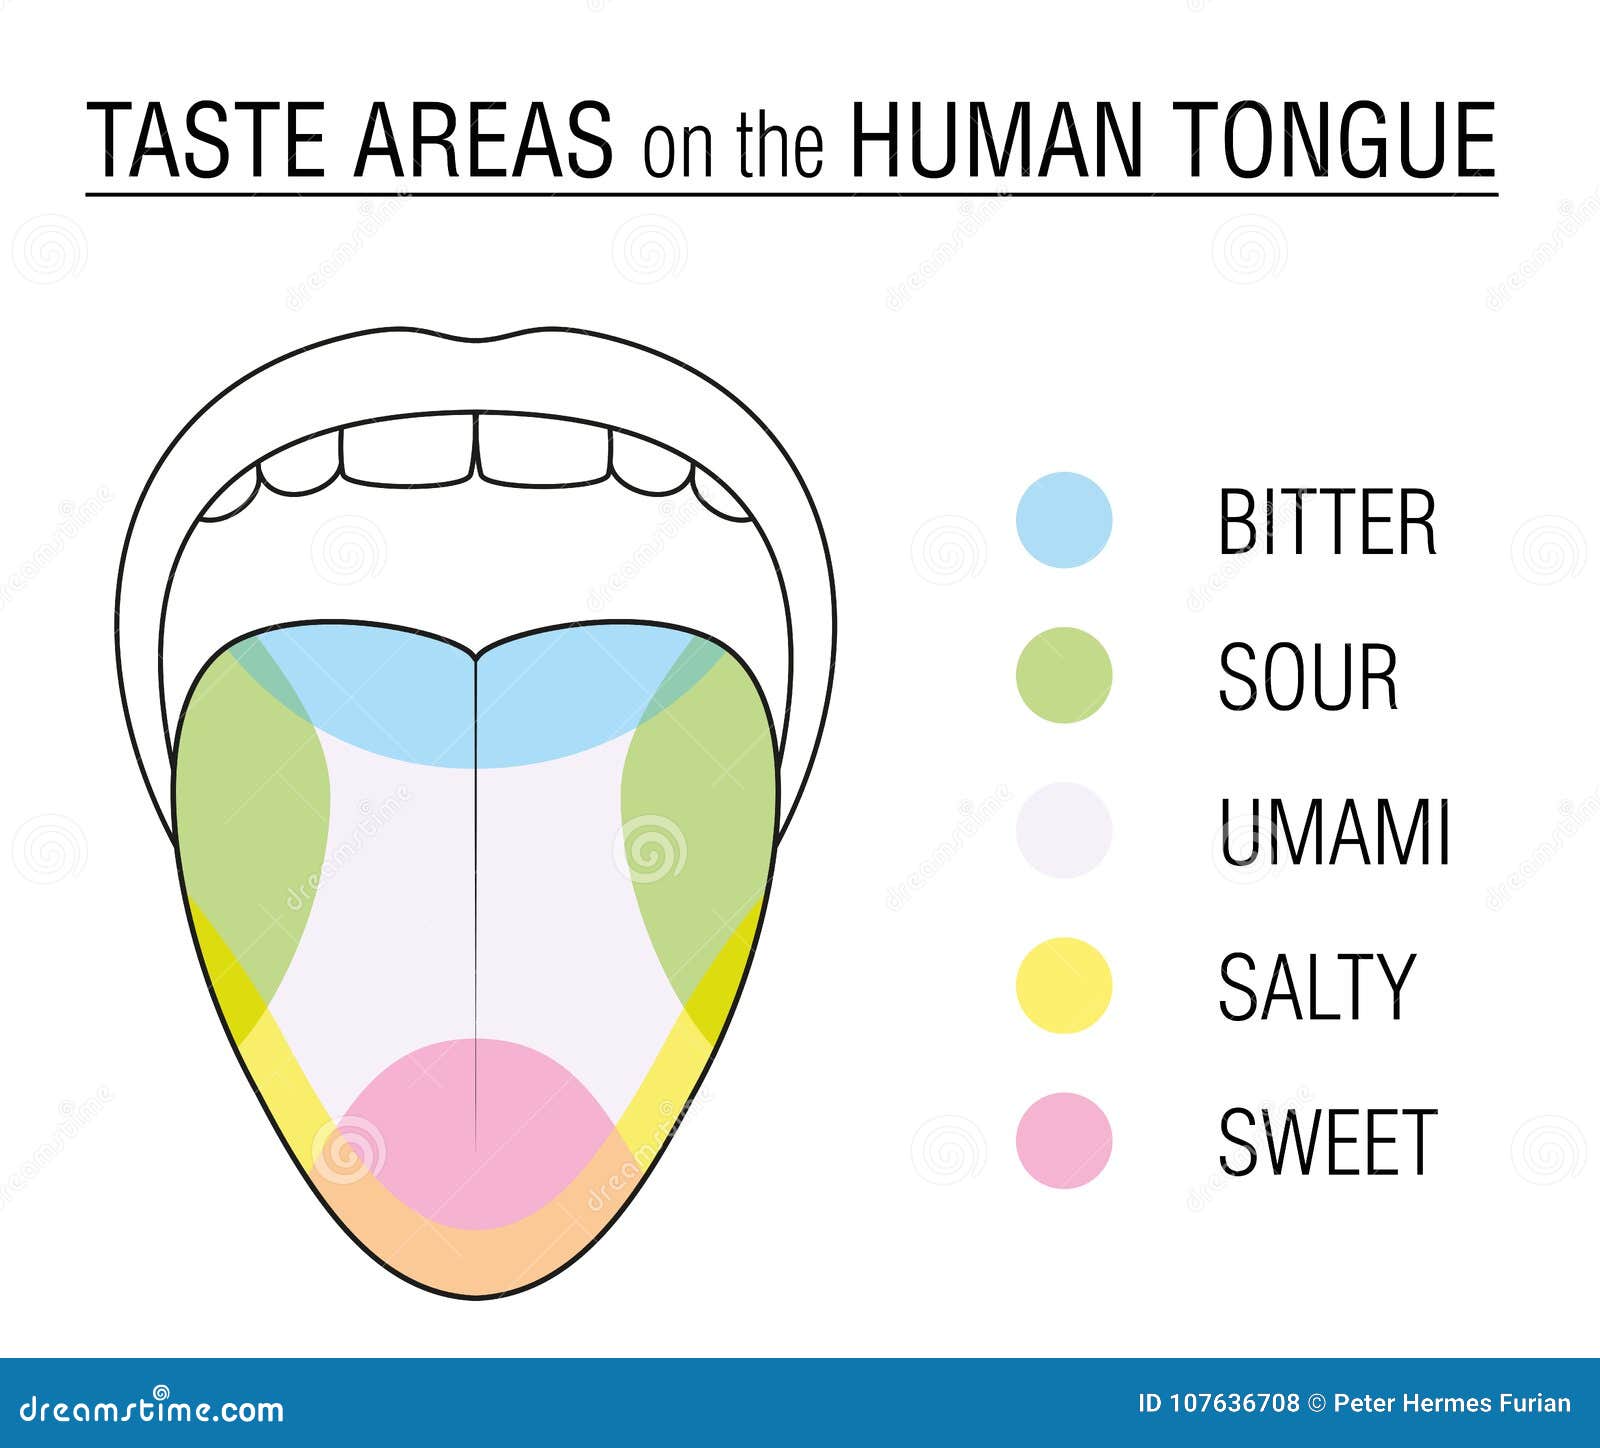 Tongue taste buds on Taste Buds: